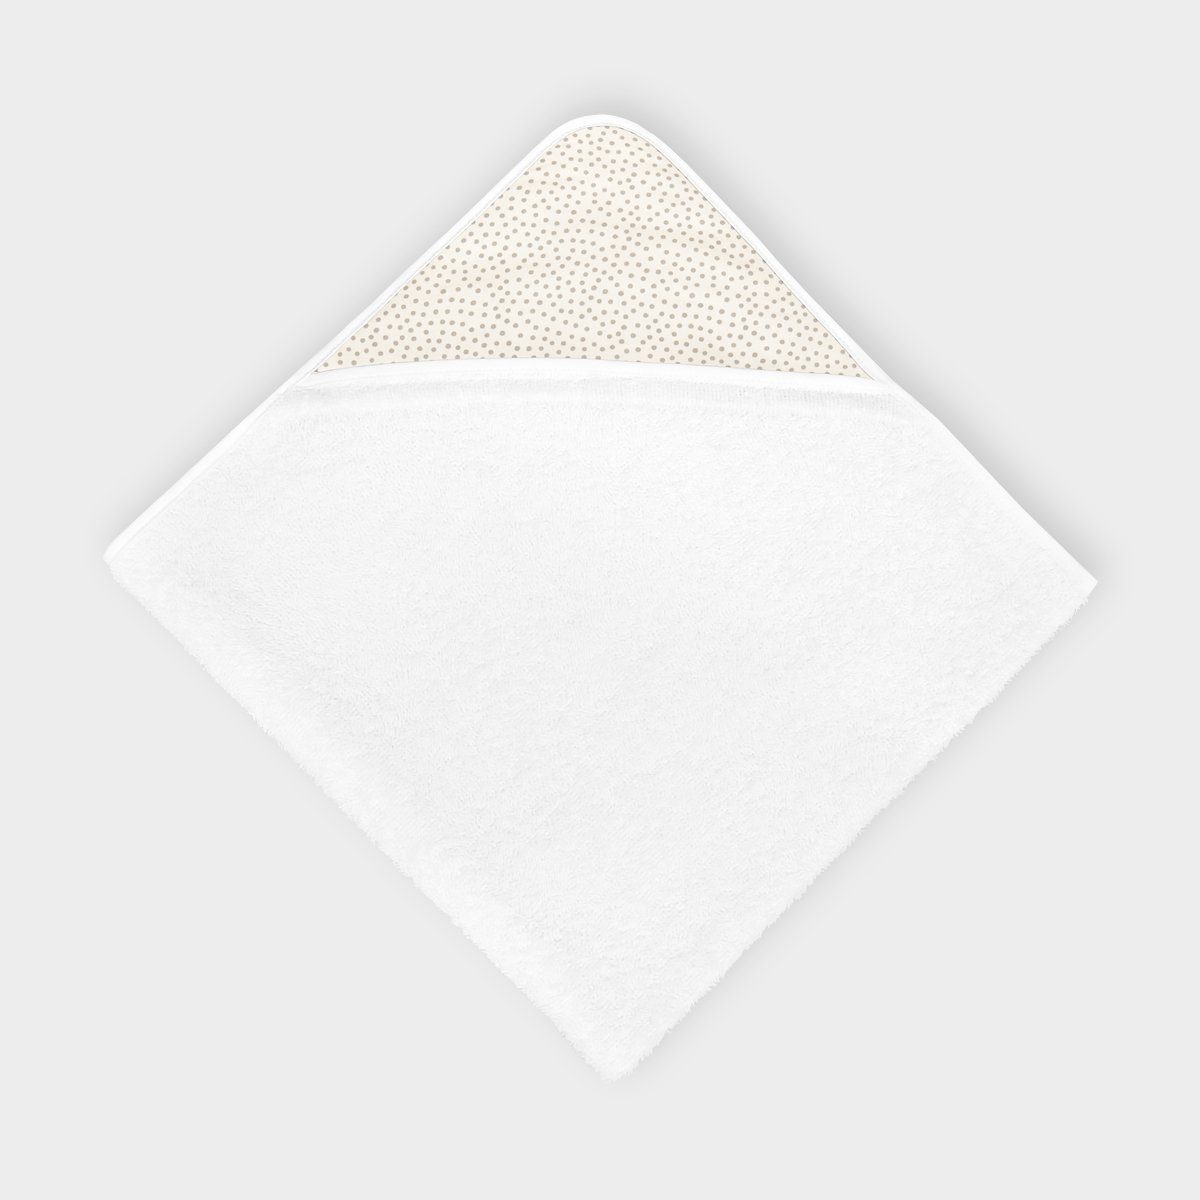 KraftKids Kapuzenhandtuch graue unregelmäßige Punkte auf Weiß, 100% Baumwolle, extra dickes und weiches Frottee, eingefasst mit Schrägband